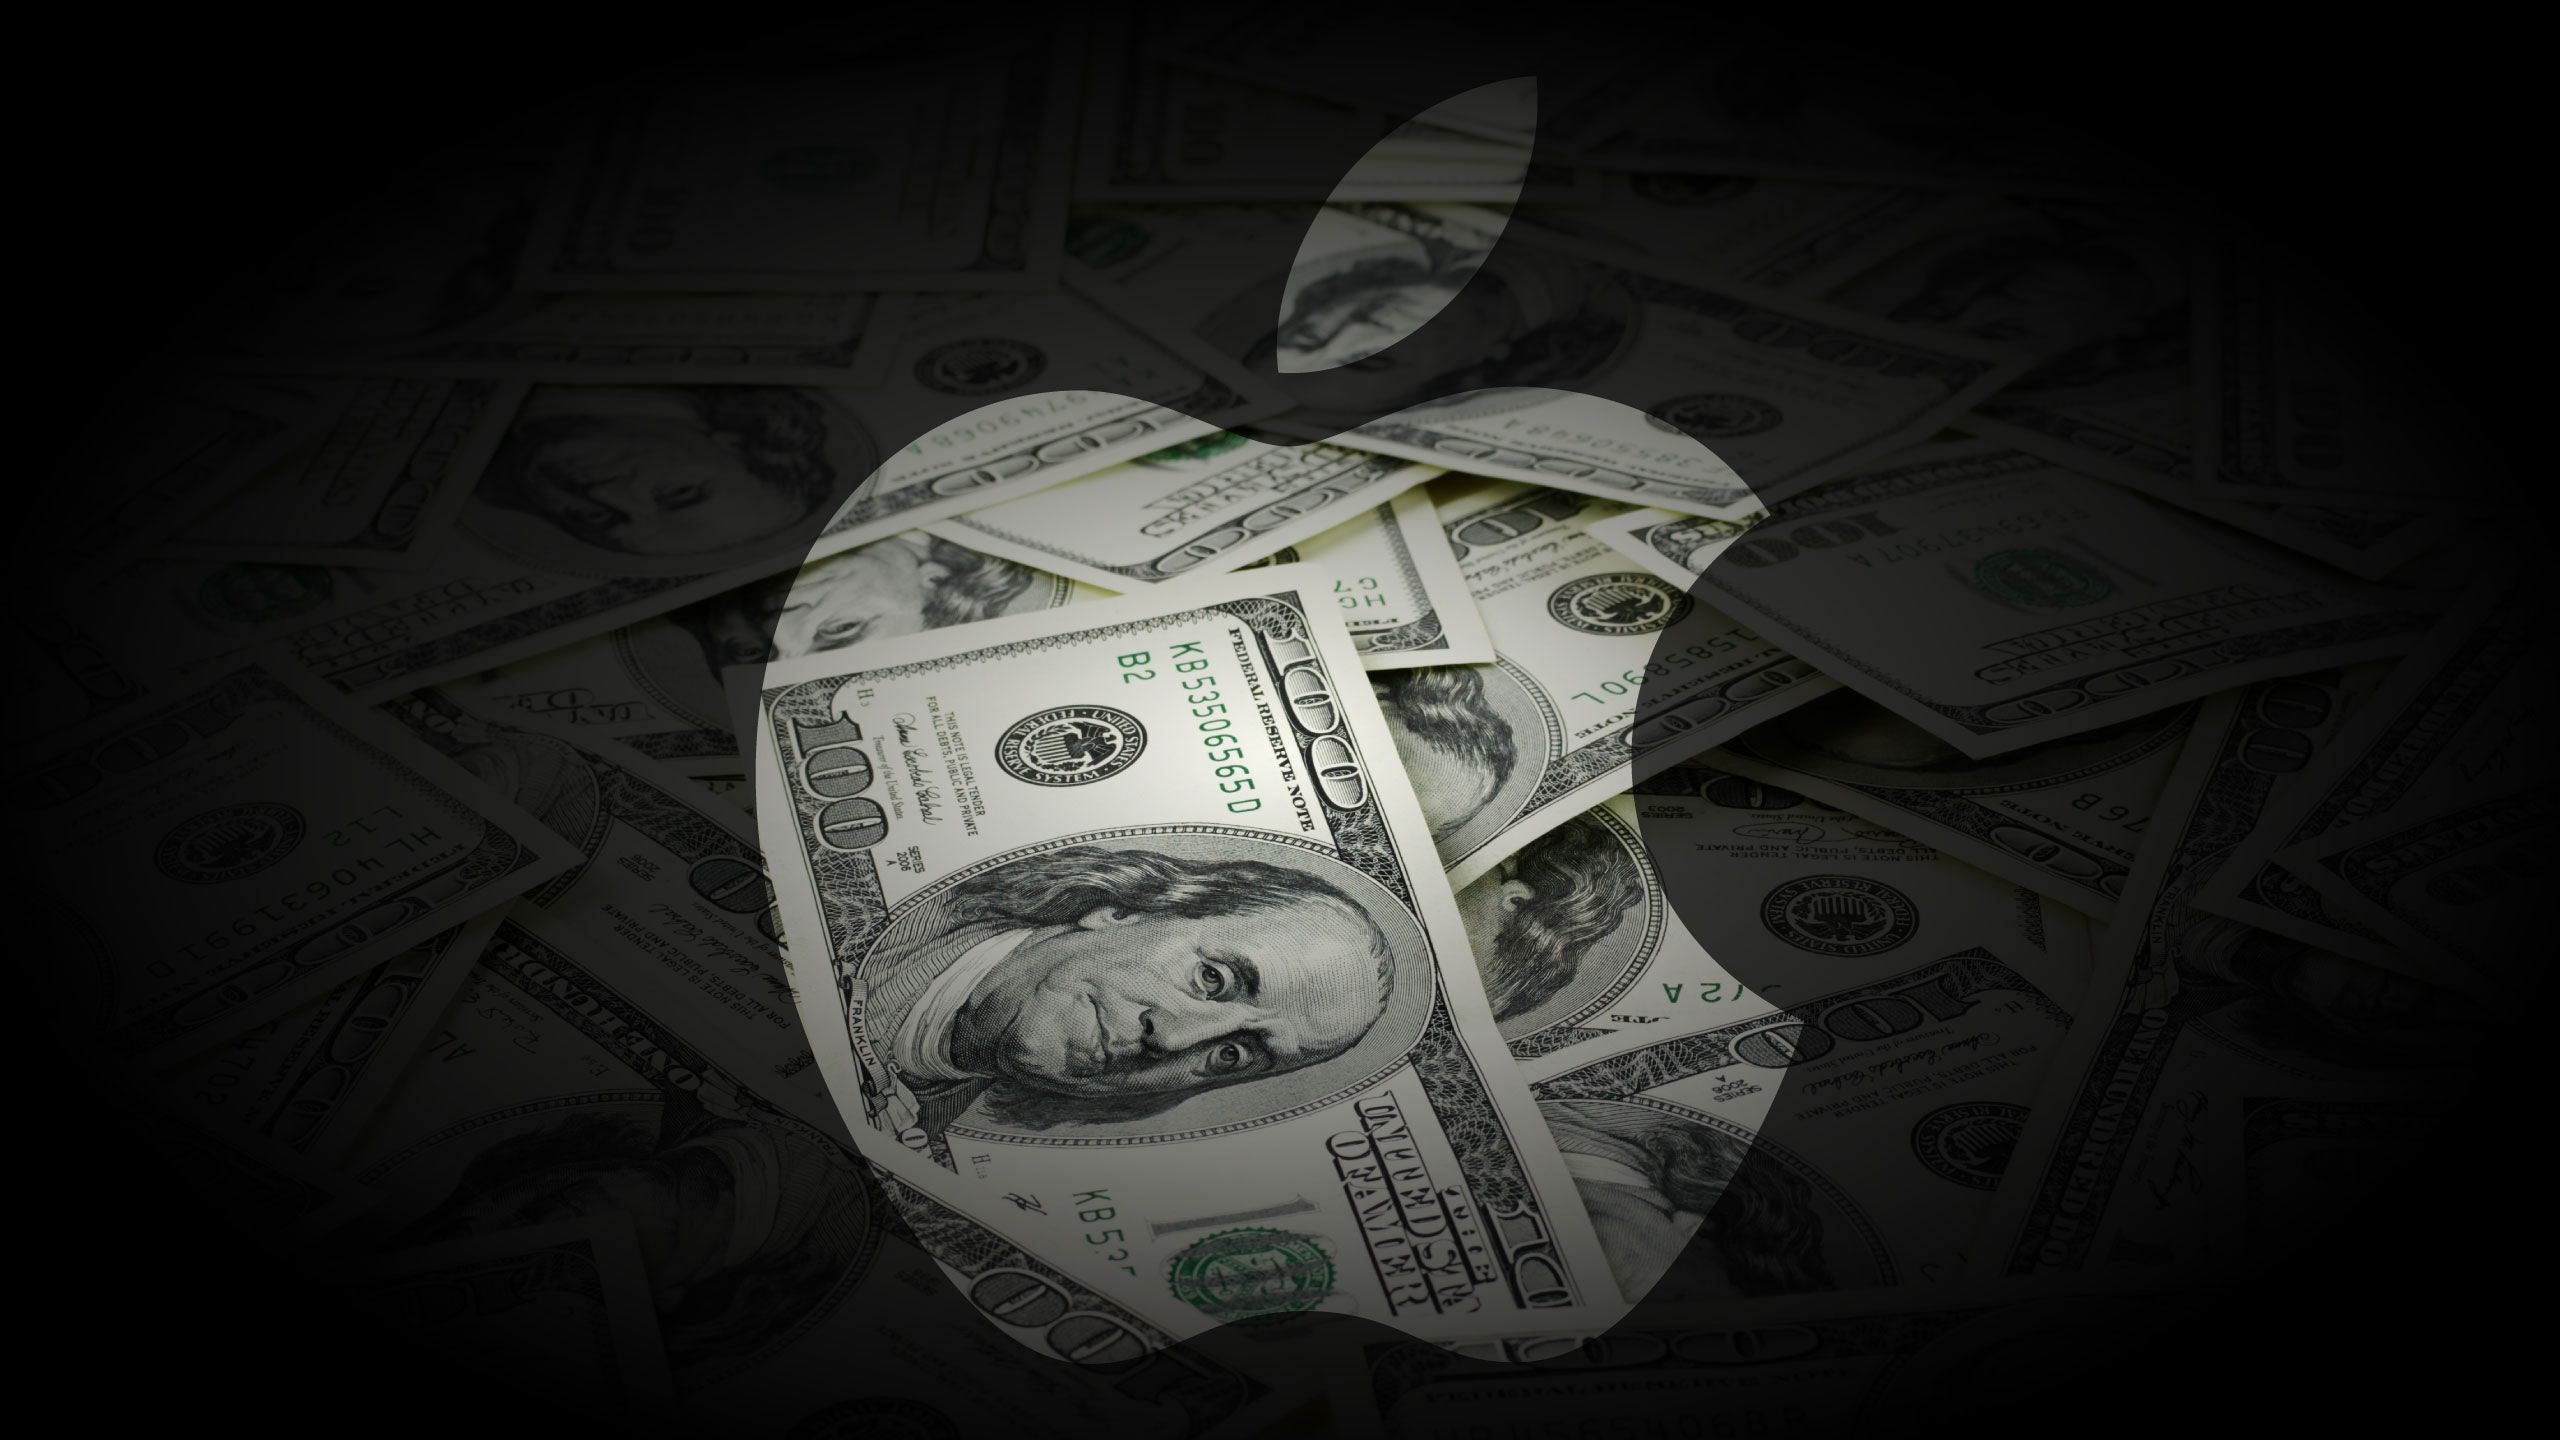 Apple, iPhone yavaşlatma davası için 500 milyon dolar ödeyecek